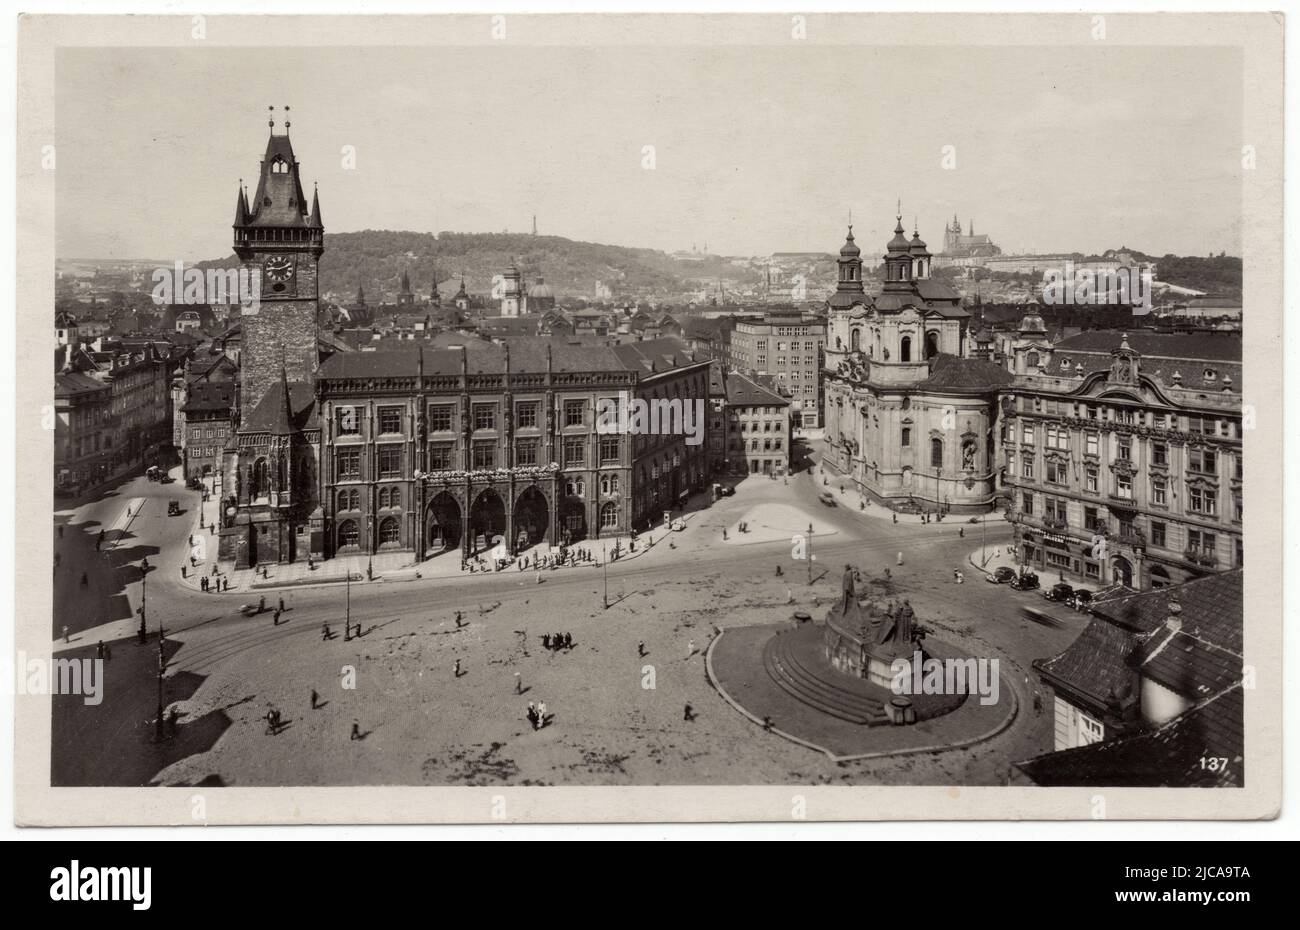 Altes Rathaus (Staroměstská radnice) und St. Nikolaus-Kirche (Kostel svatého Mikuláše) auf dem Altstädter Ring (Staroměstské náměstí) in Prag, Tschechoslowakei, von oben abgebildet, auf der tschechoslowakischen Vintage-Postkarte, die um 1940 ausgegeben wurde. Im Zentrum ist der neugotische Flügel des Alten Rathauses zu sehen, der in den letzten Tagen des Zweiten Weltkriegs zerstört wurde. Rechts im Vordergrund ist das Denkmal des tschechischen Bildhauers Ladislav Šaloun (1915) von Jan Hus zu sehen. Mit freundlicher Genehmigung der Azoor Postkartensammlung. Stockfoto